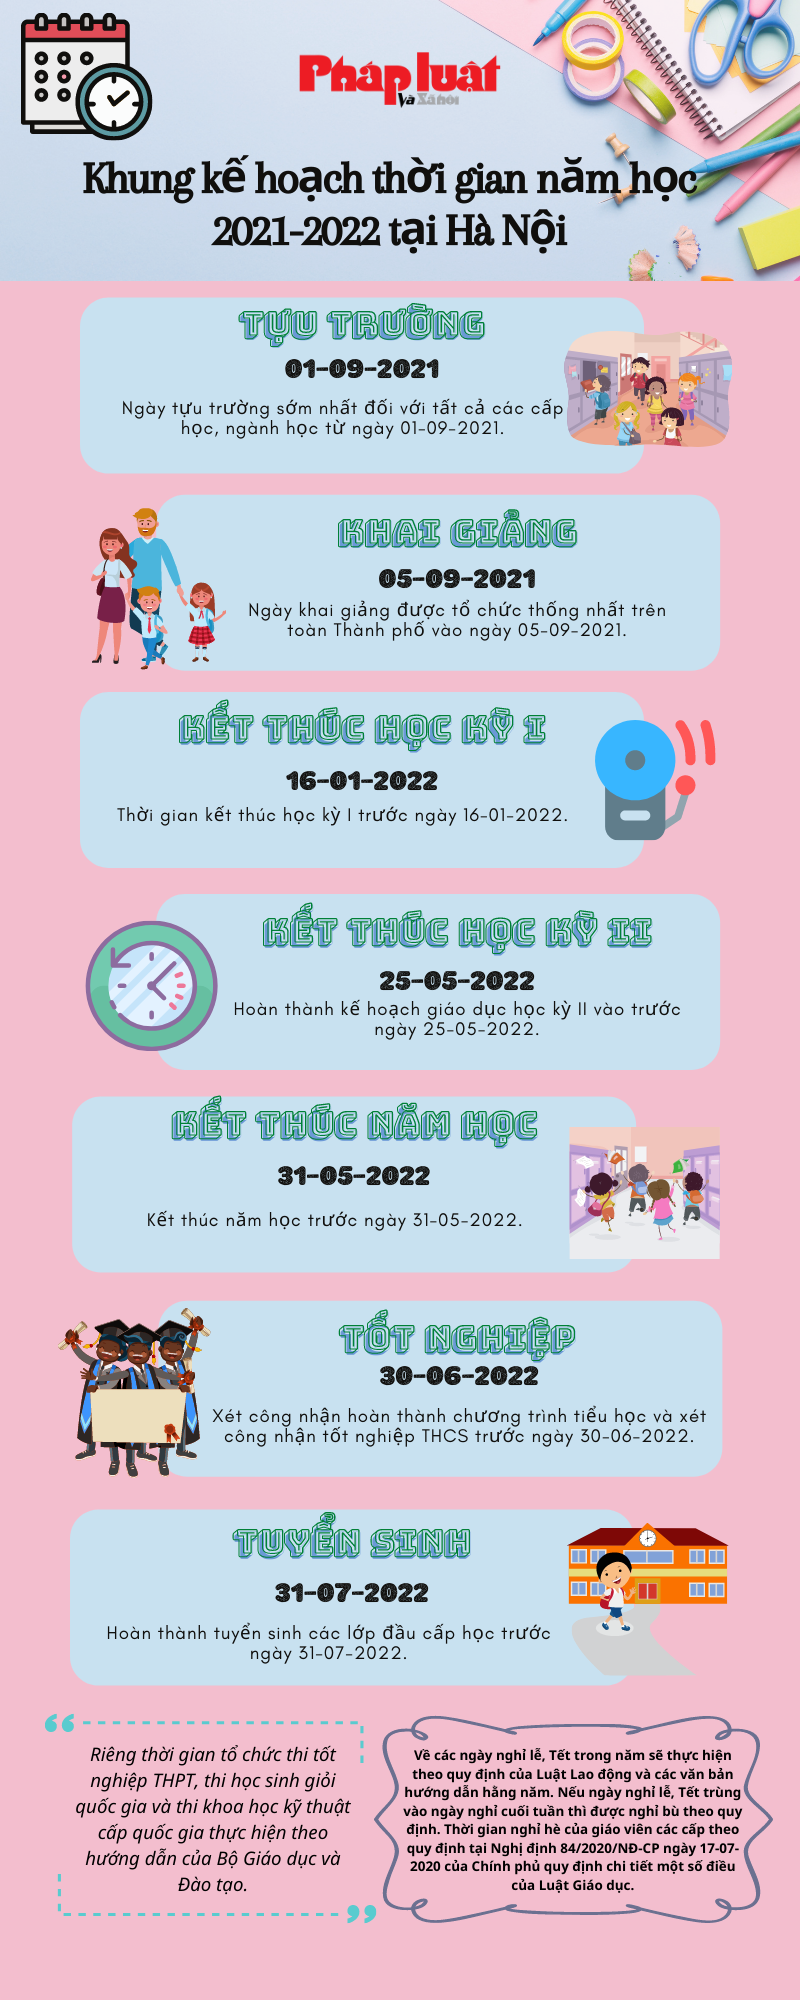 Khung kế hoạch thời gian năm học 2021 2022 tại Hà Nội